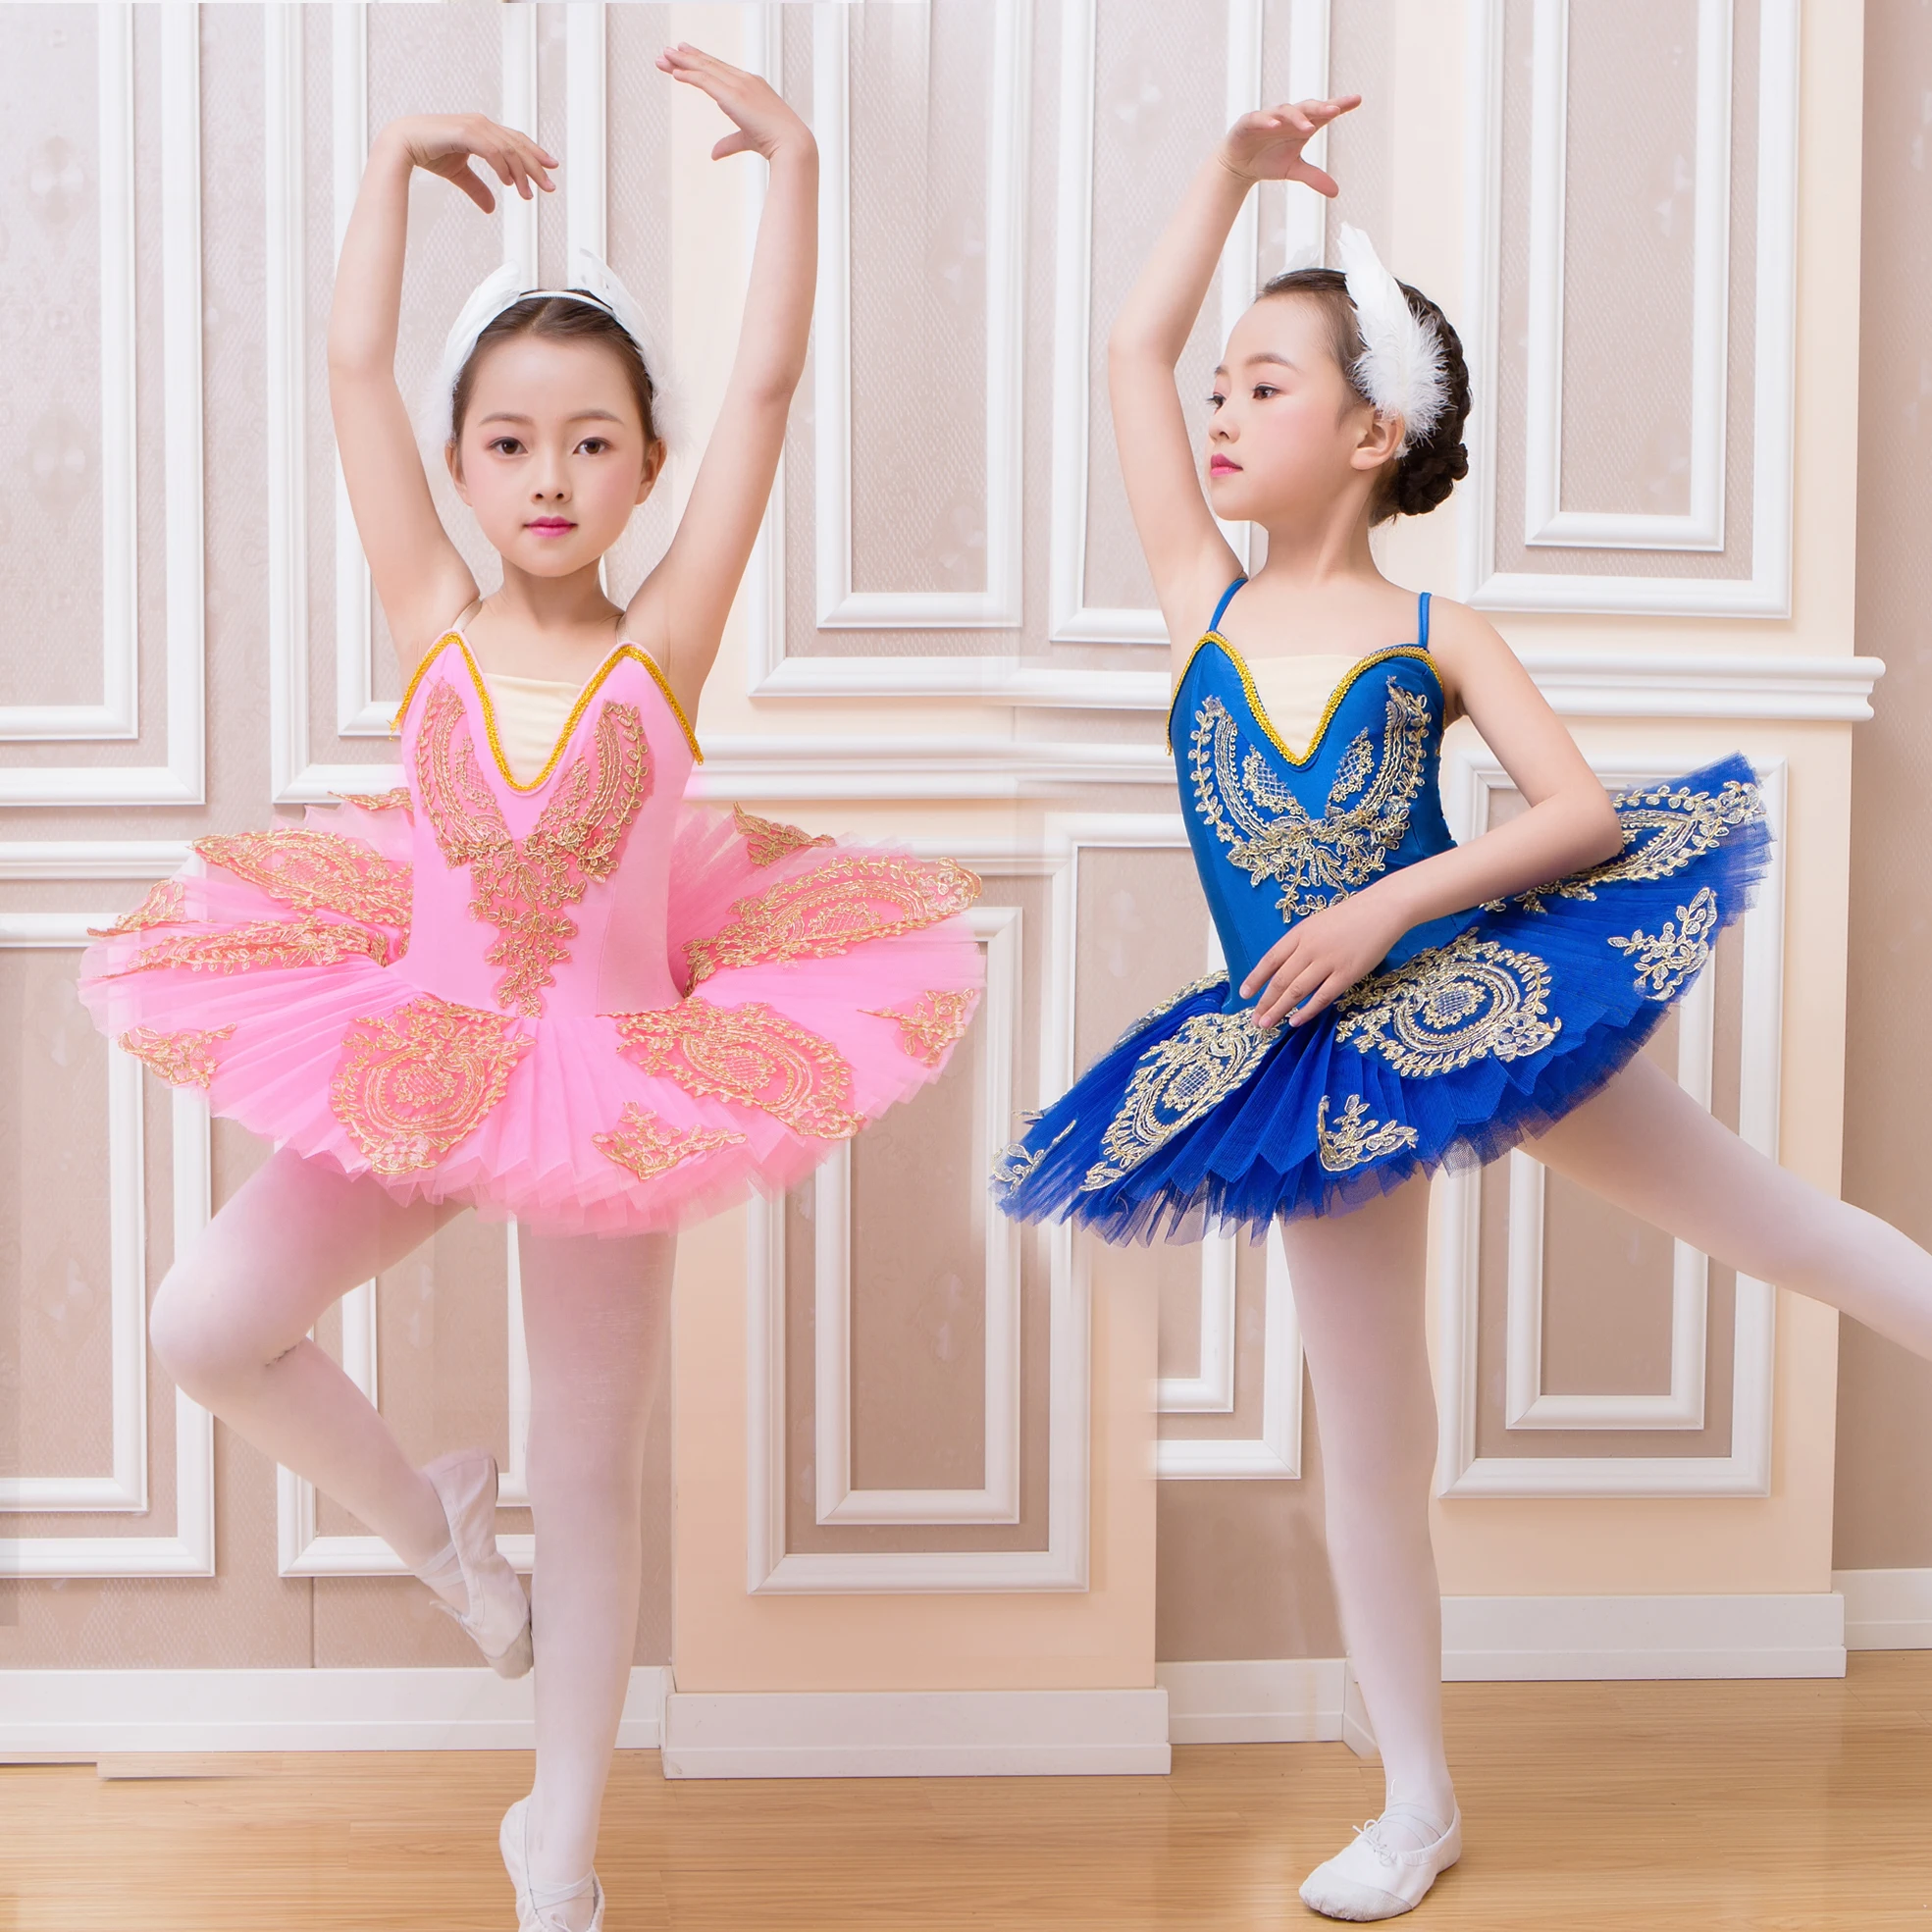 Детское профессиональное балетное танцевальное платье для девочек, детская балетная юбка-пачка, танцевальная юбка для сценического шоу, Лебединое озеро, балерина, танцевальная одежда, купальник